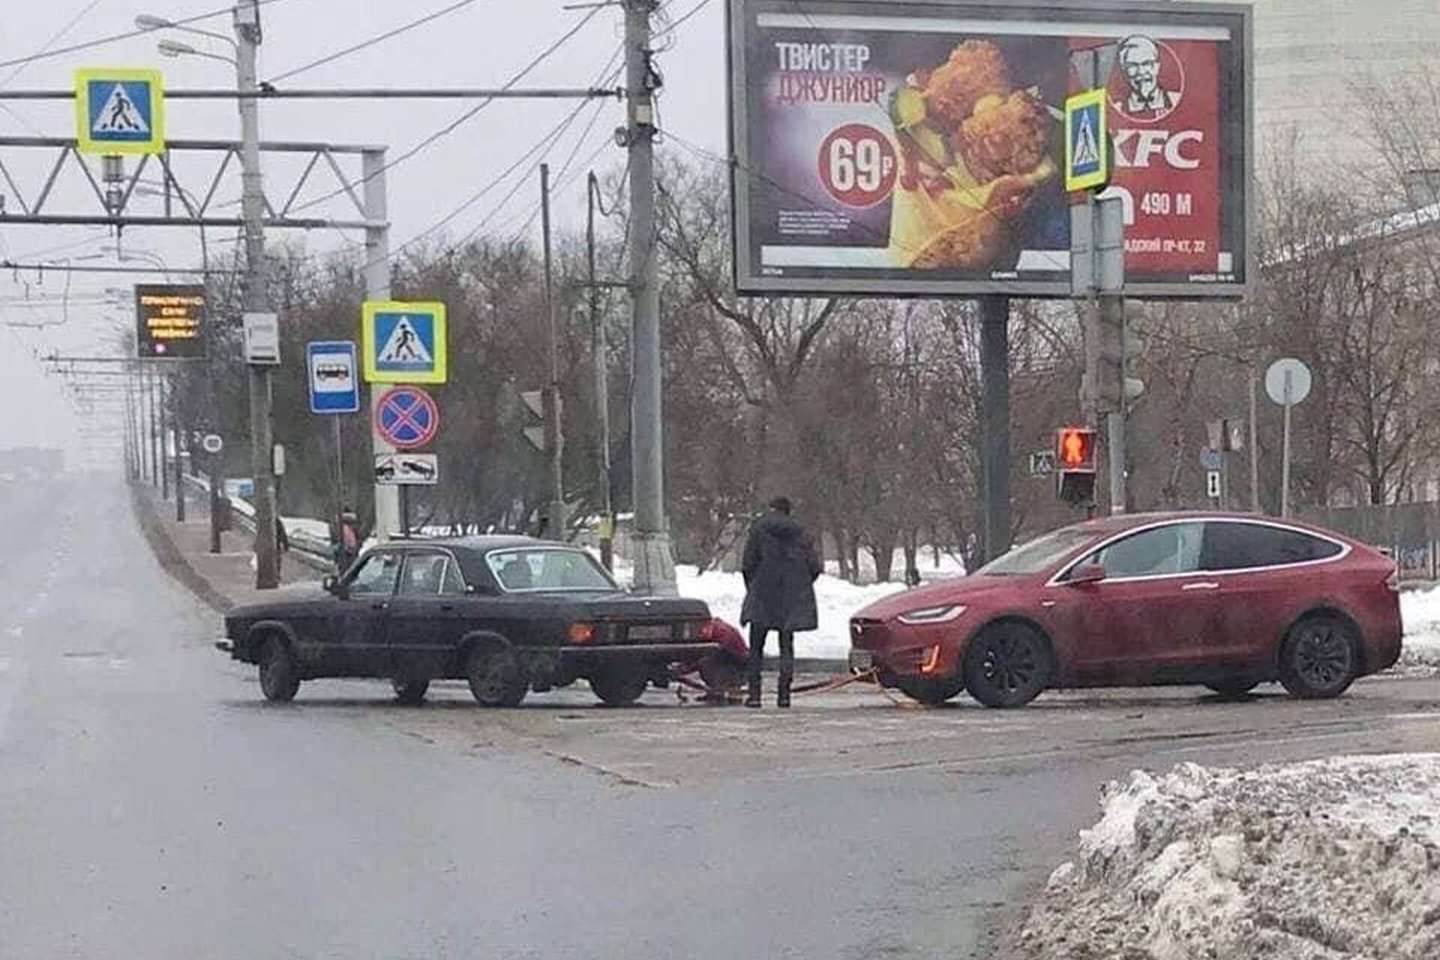  Rusus nustebino gatvėje užfiksuotas netikėtos techninės pagalbos scena.<br> Igorio Pisarskio/Facebook.com nuotr.